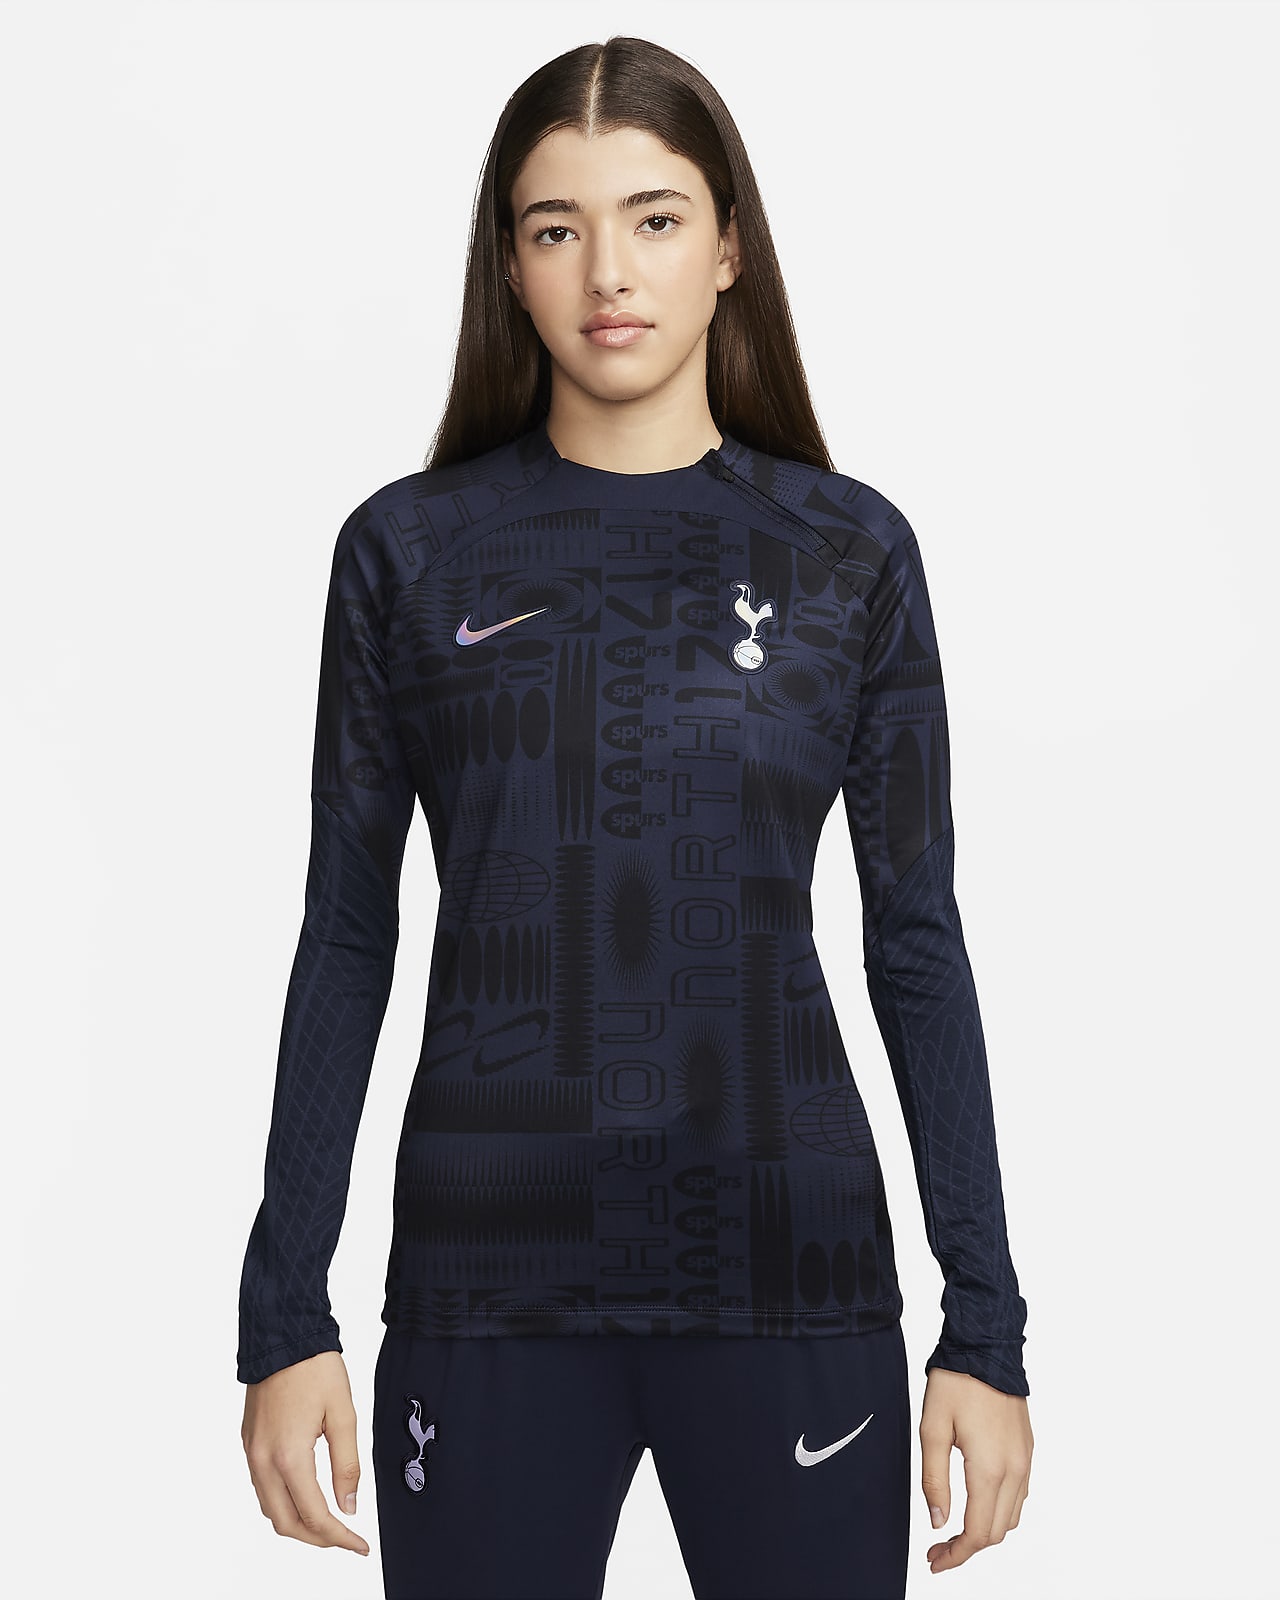 Tottenham Hotspur Strike Nike Dri-FIT női futball-melegítőfelső